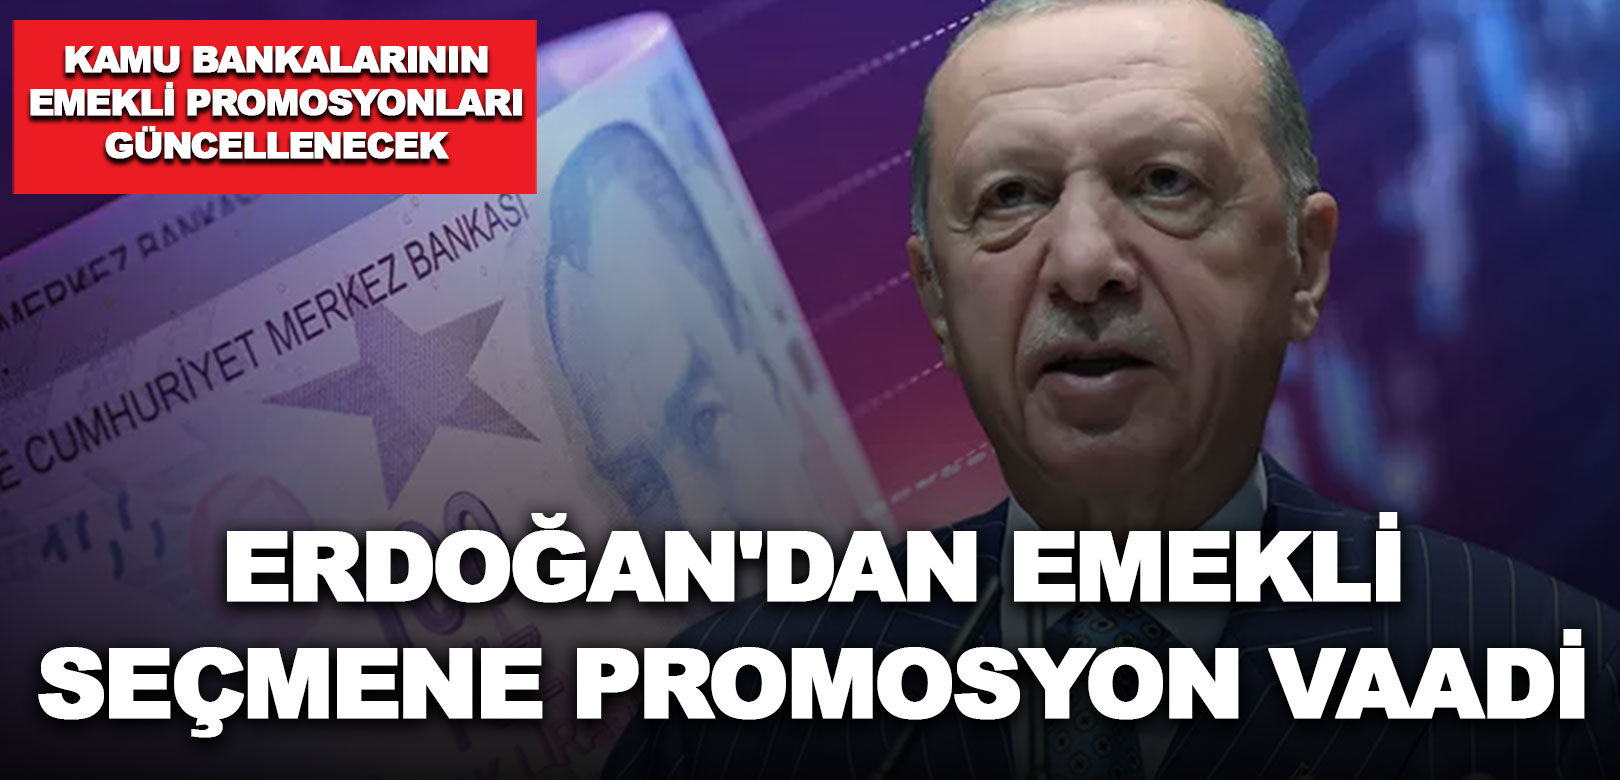 Erdoğan'dan emekli seçmene promosyon vaadi